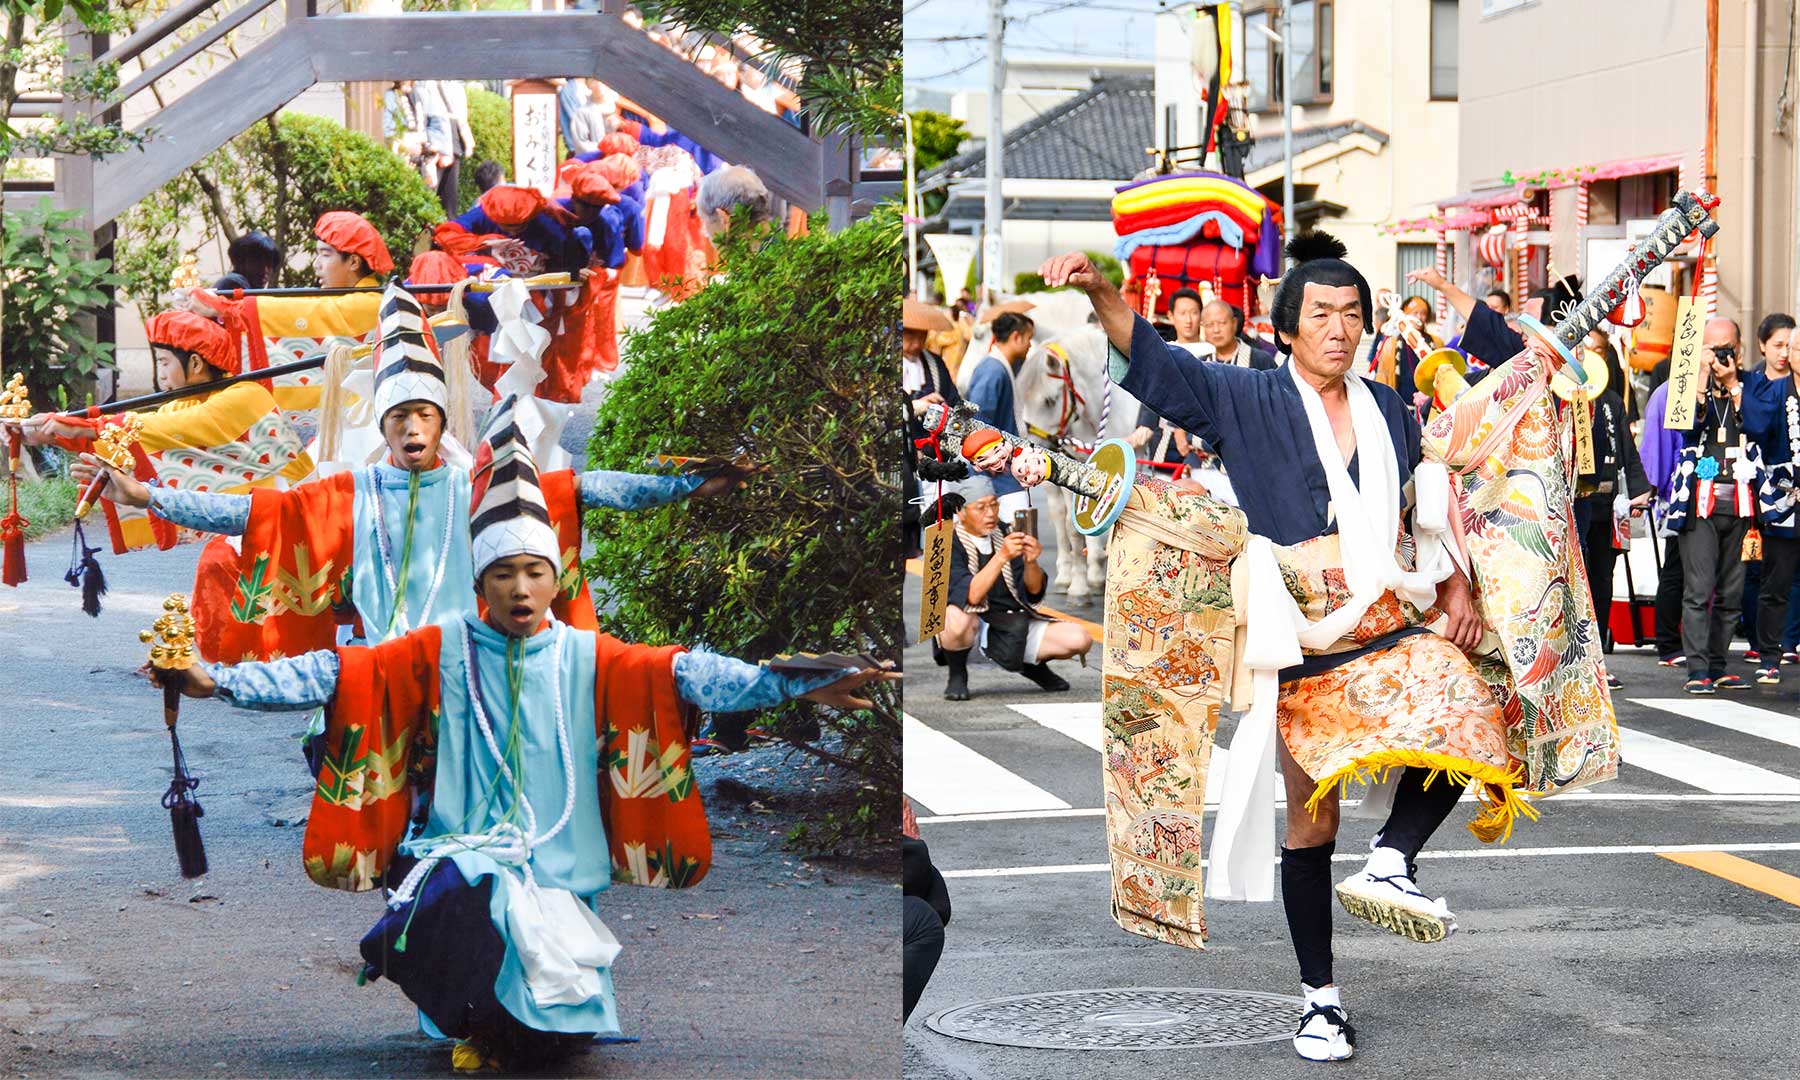 「島田大祭」の花形でもある「大奴」と「鹿島踊」を支える人々の思い。伝承と継続を目指して